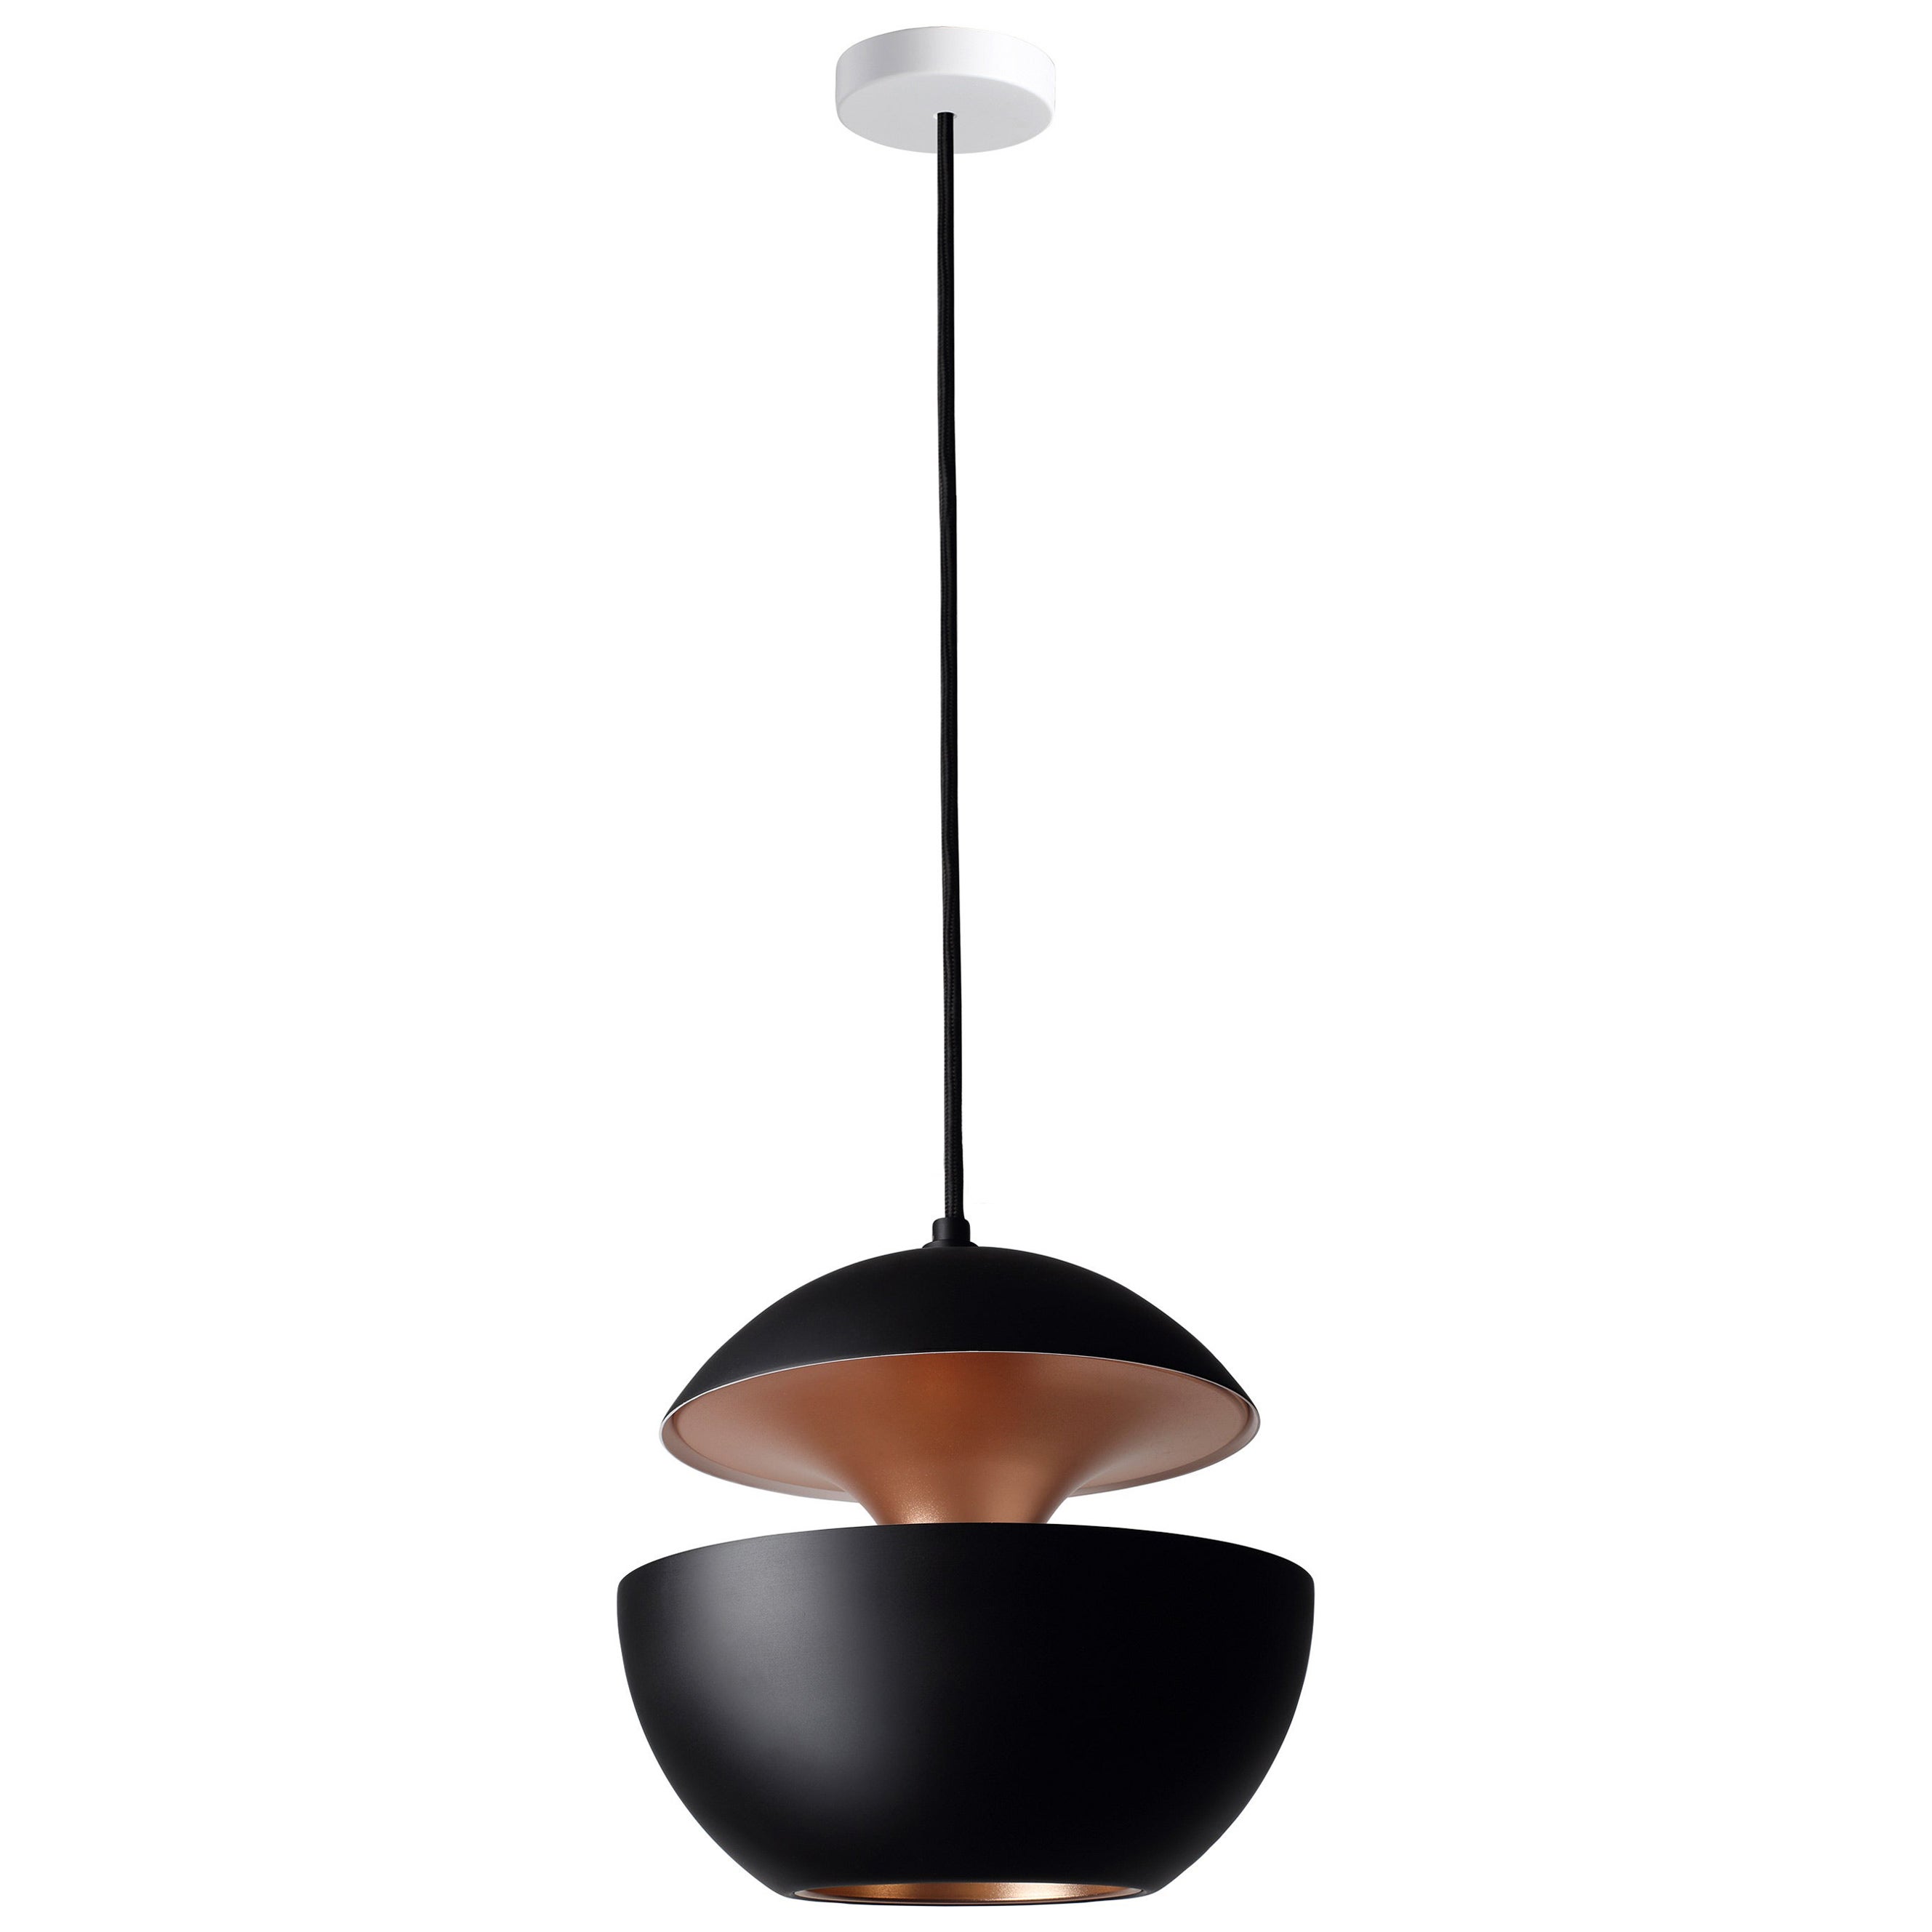 DCW Editions Here Comes the Sun 250 Pendant Lamp in Black Copper Aluminium For Sale